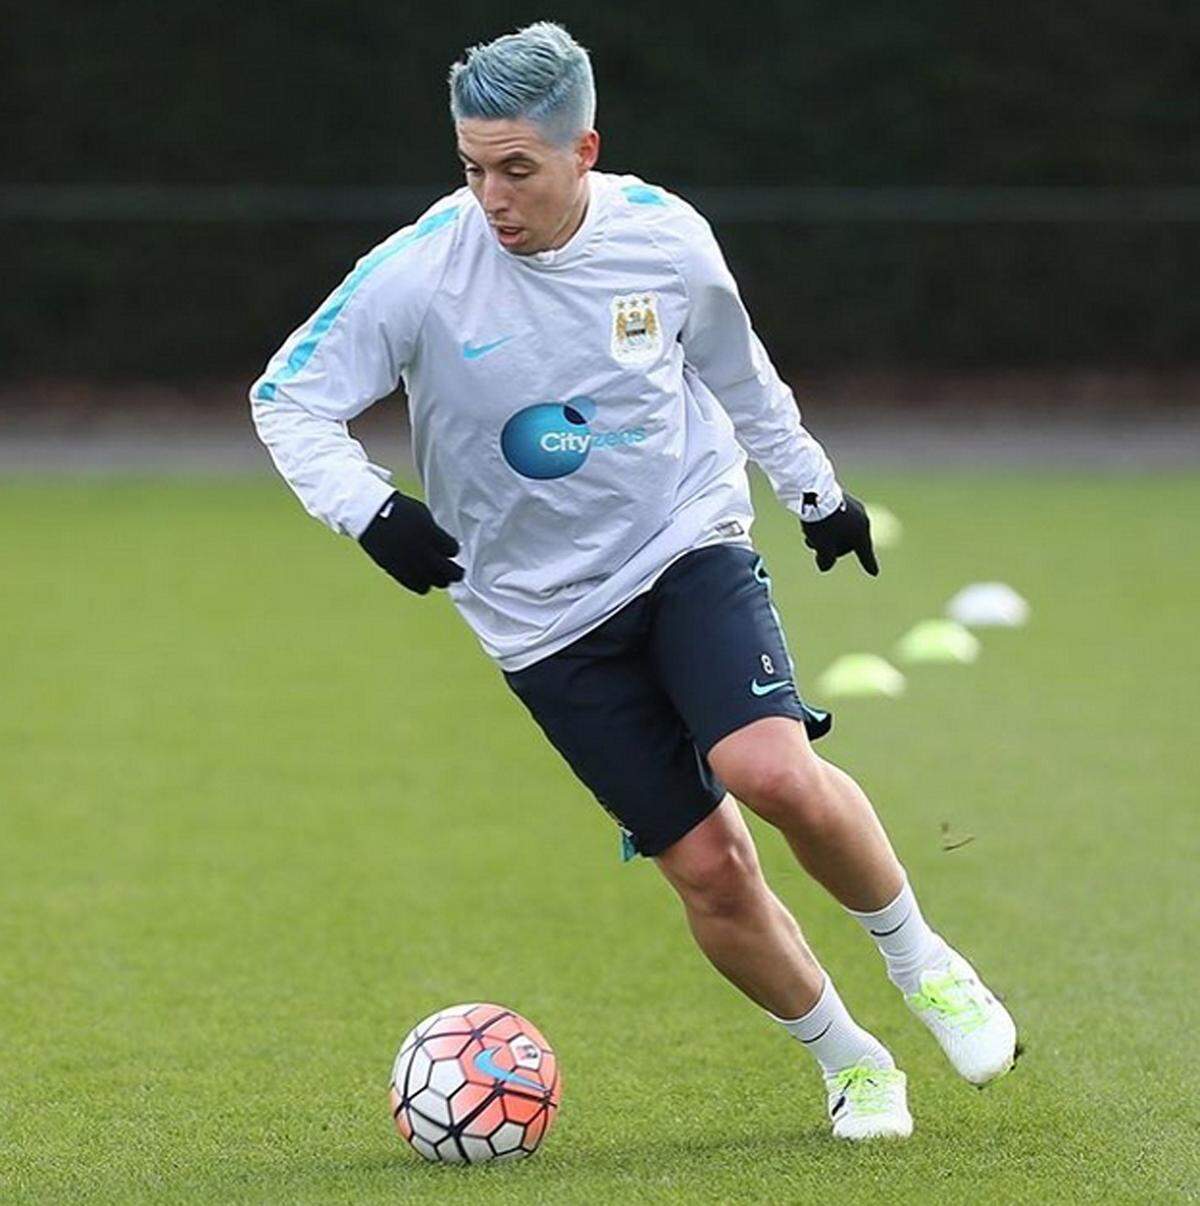 Etwas auffälliger gefiel es Samir Nasri von Manchester City. Er färbte sich die Haare blau.